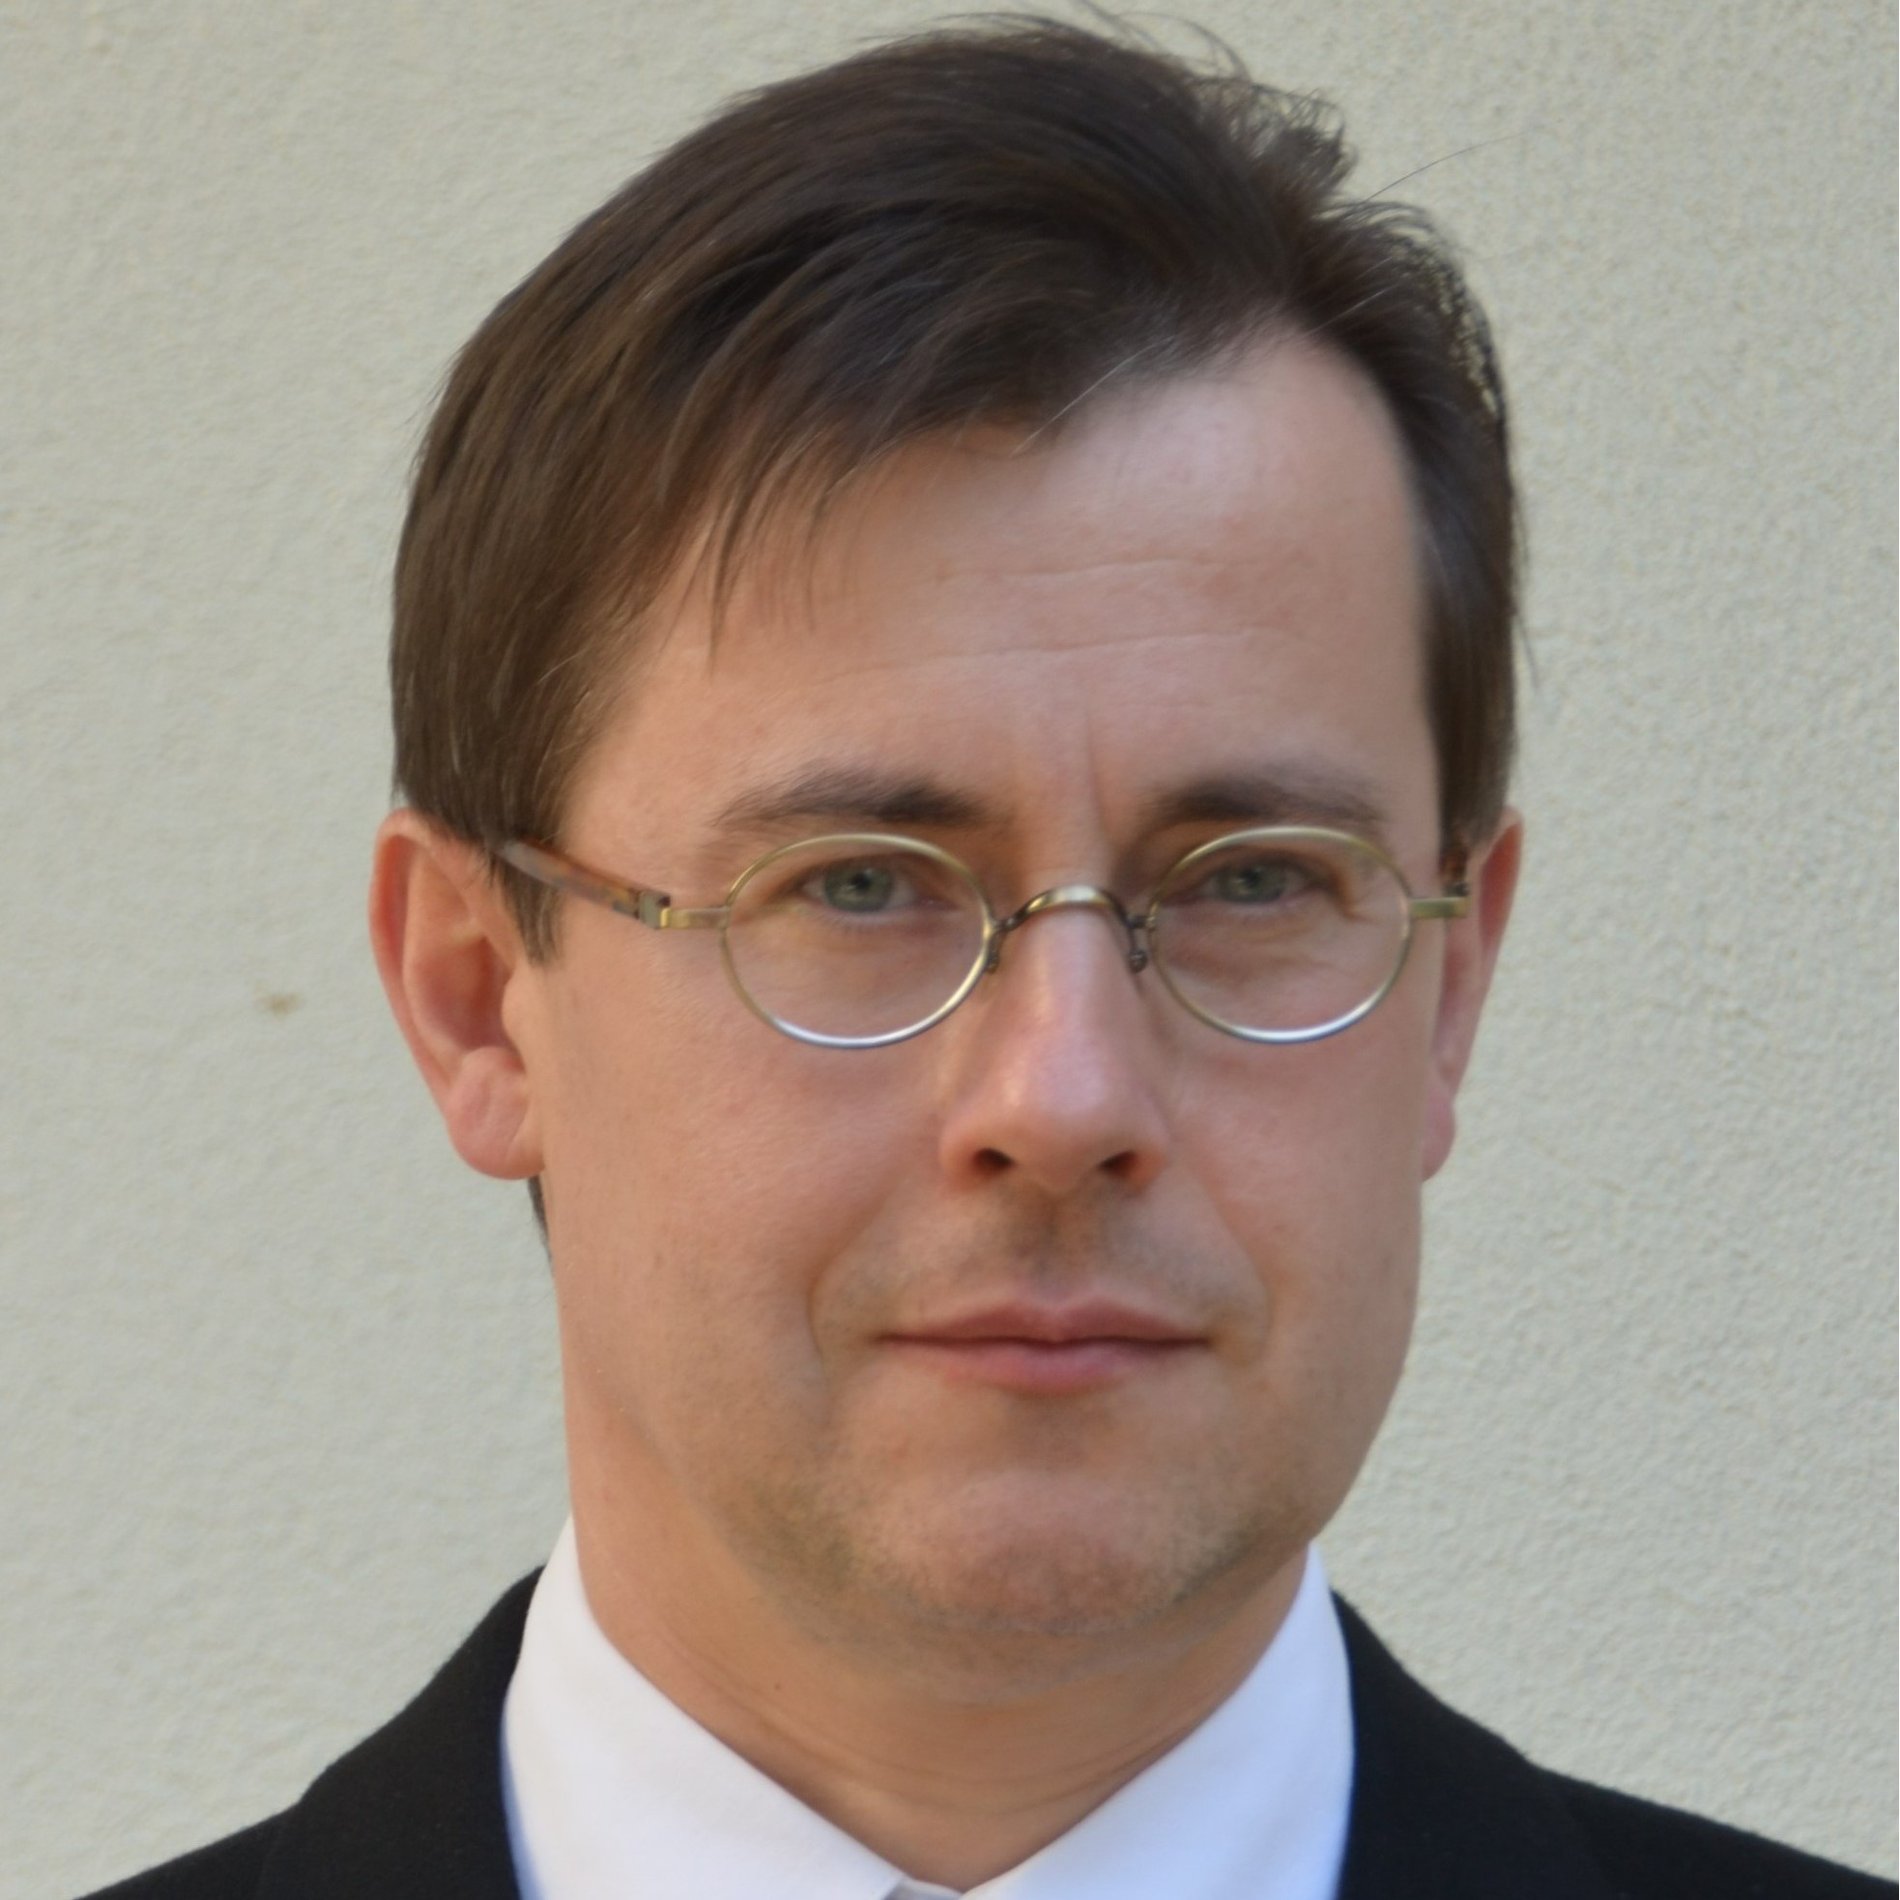 Piotr J. Gorecki, M.D., FACS